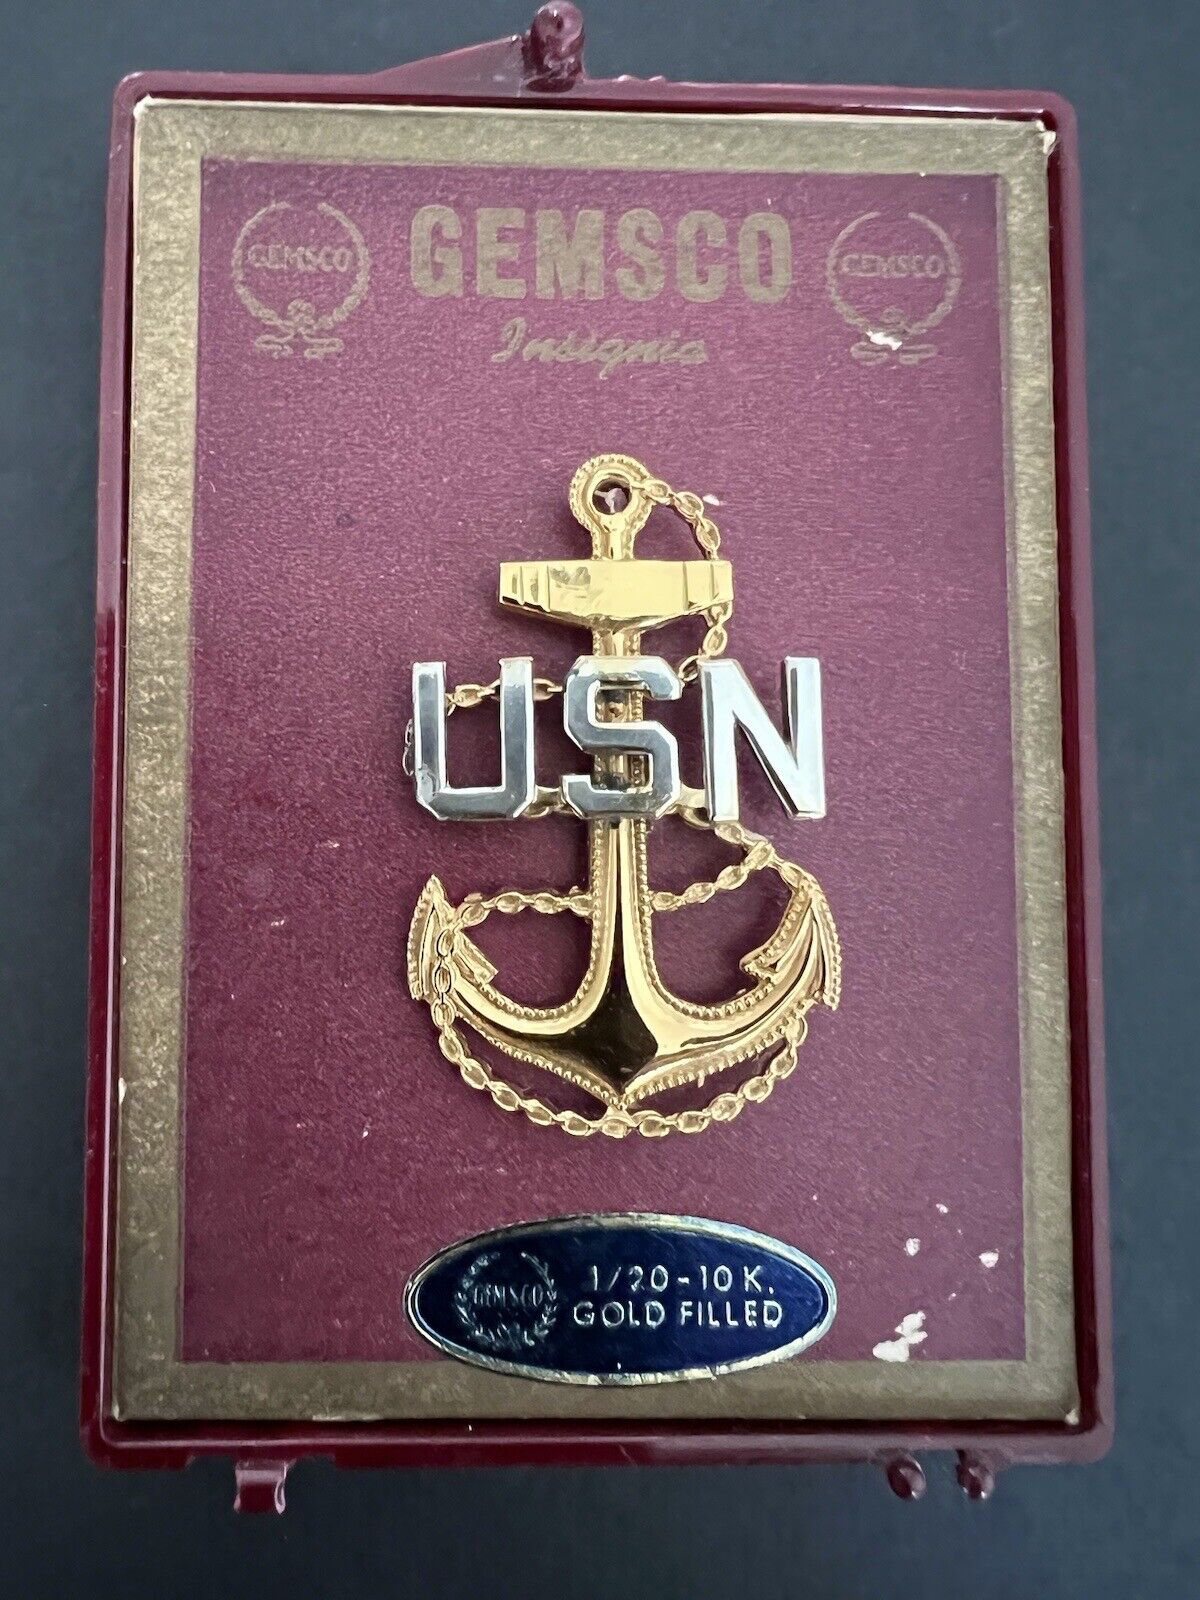 Vintage GEMSCO USN 1/20 10K Gold Filled & Sterling Anchor Pin Navy